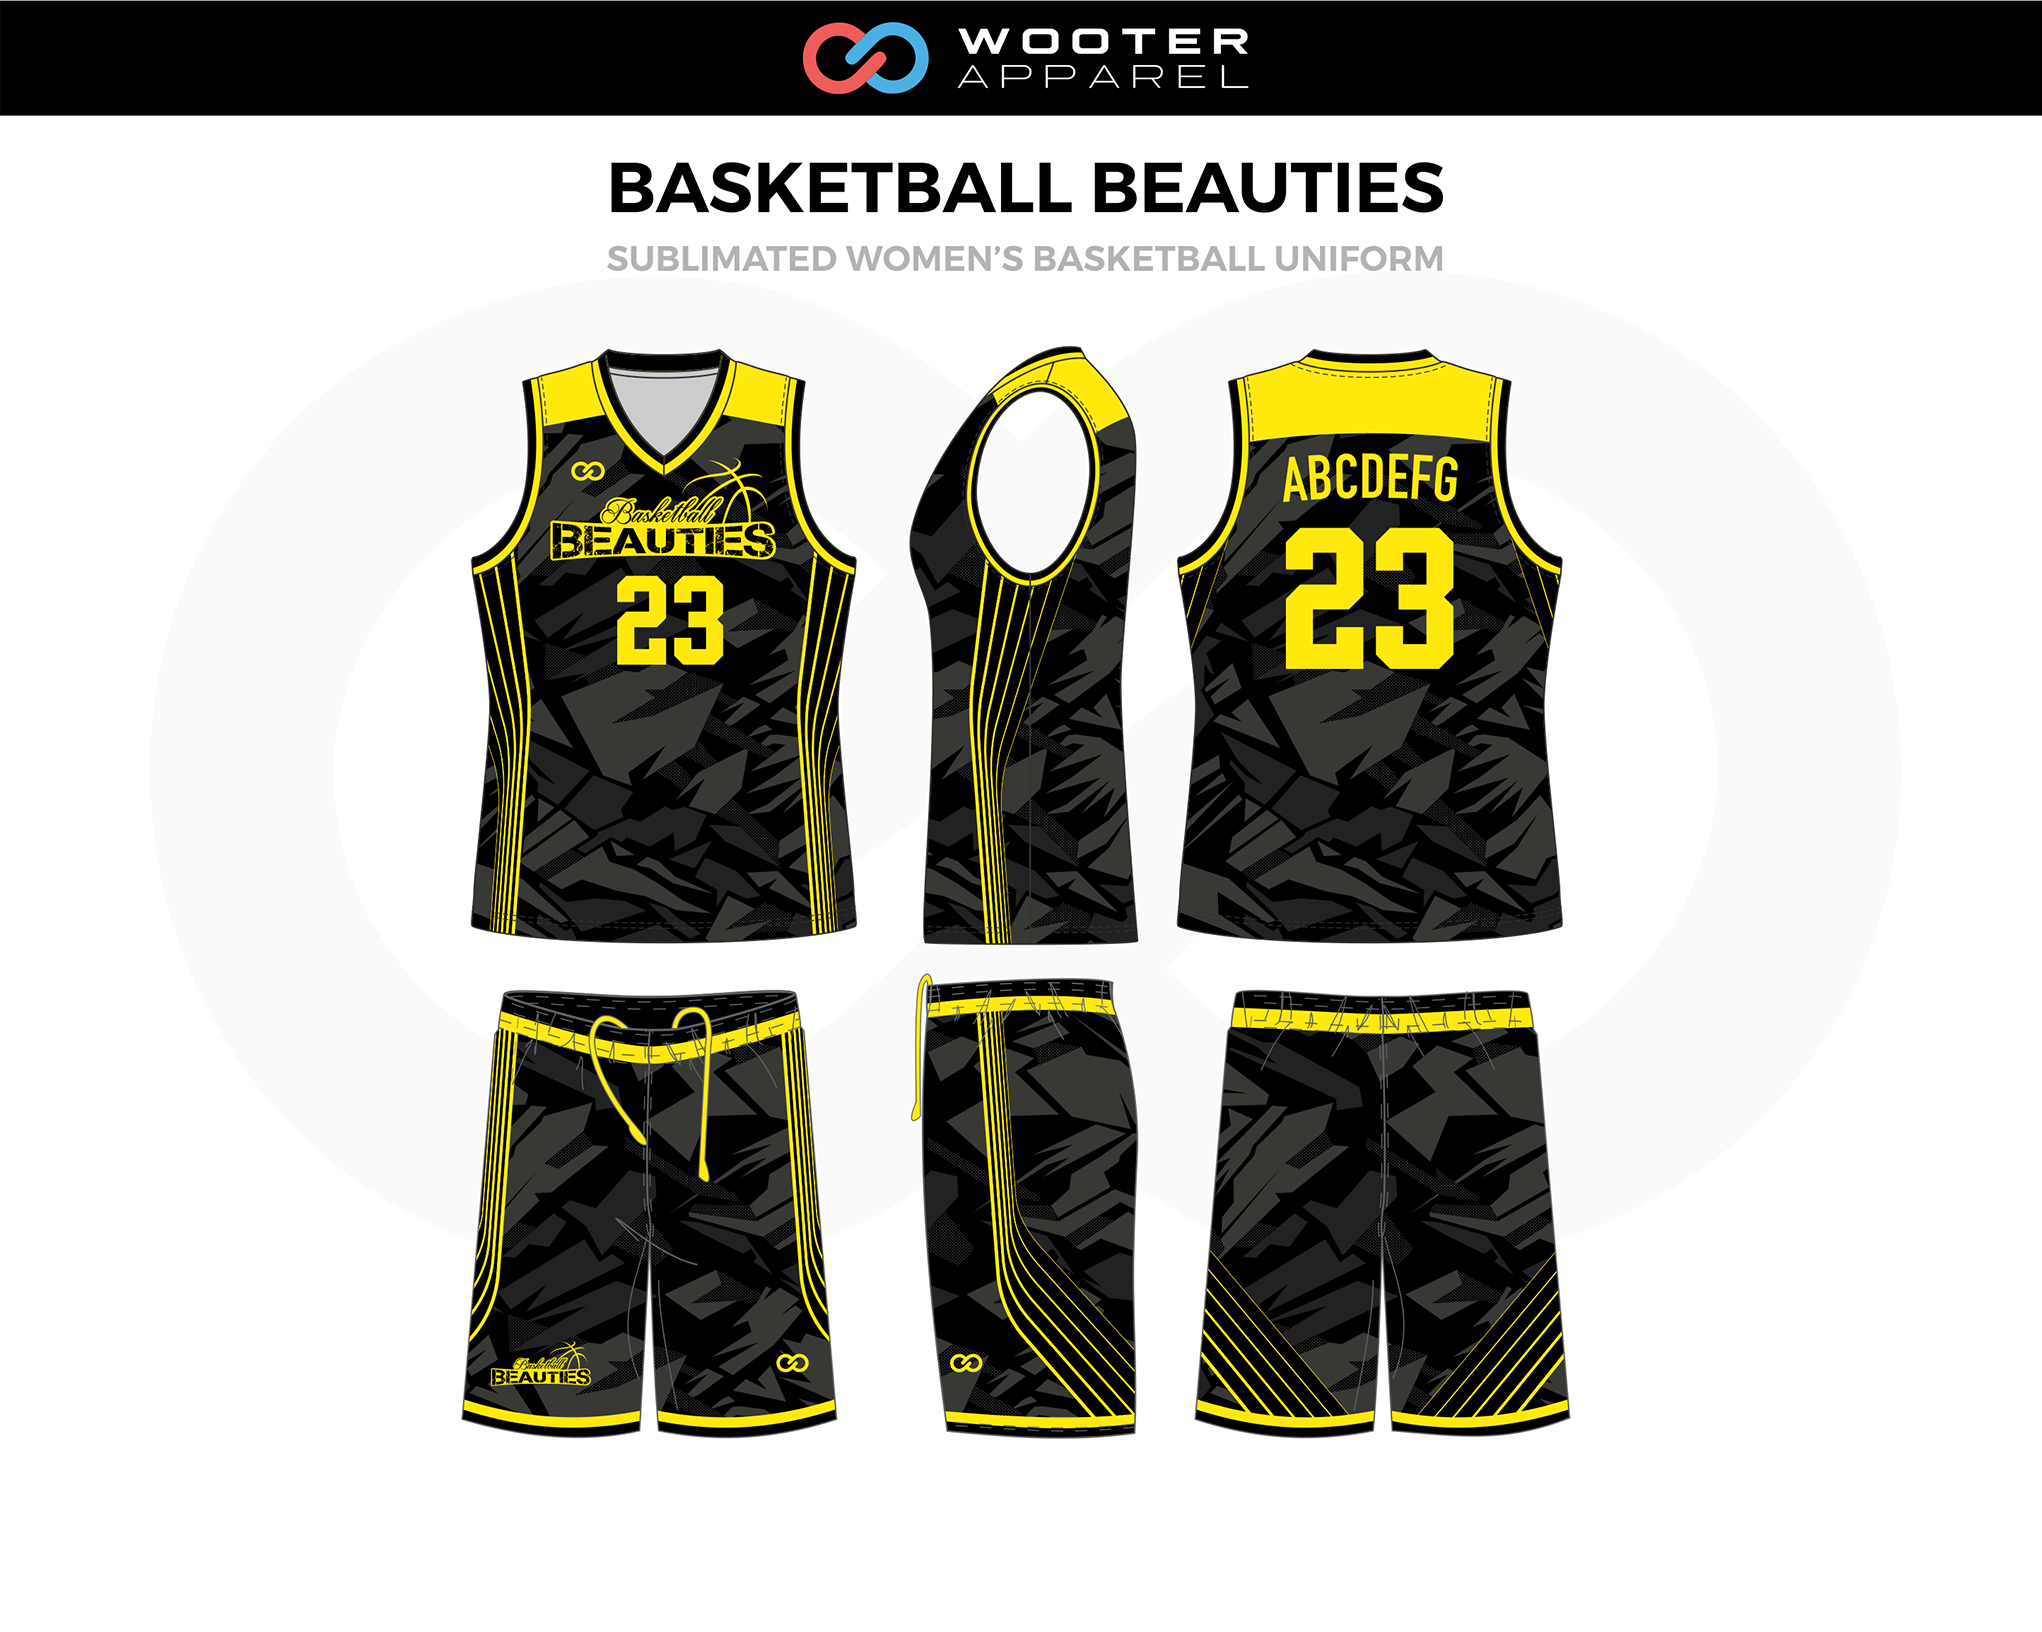 the best basketball jersey design